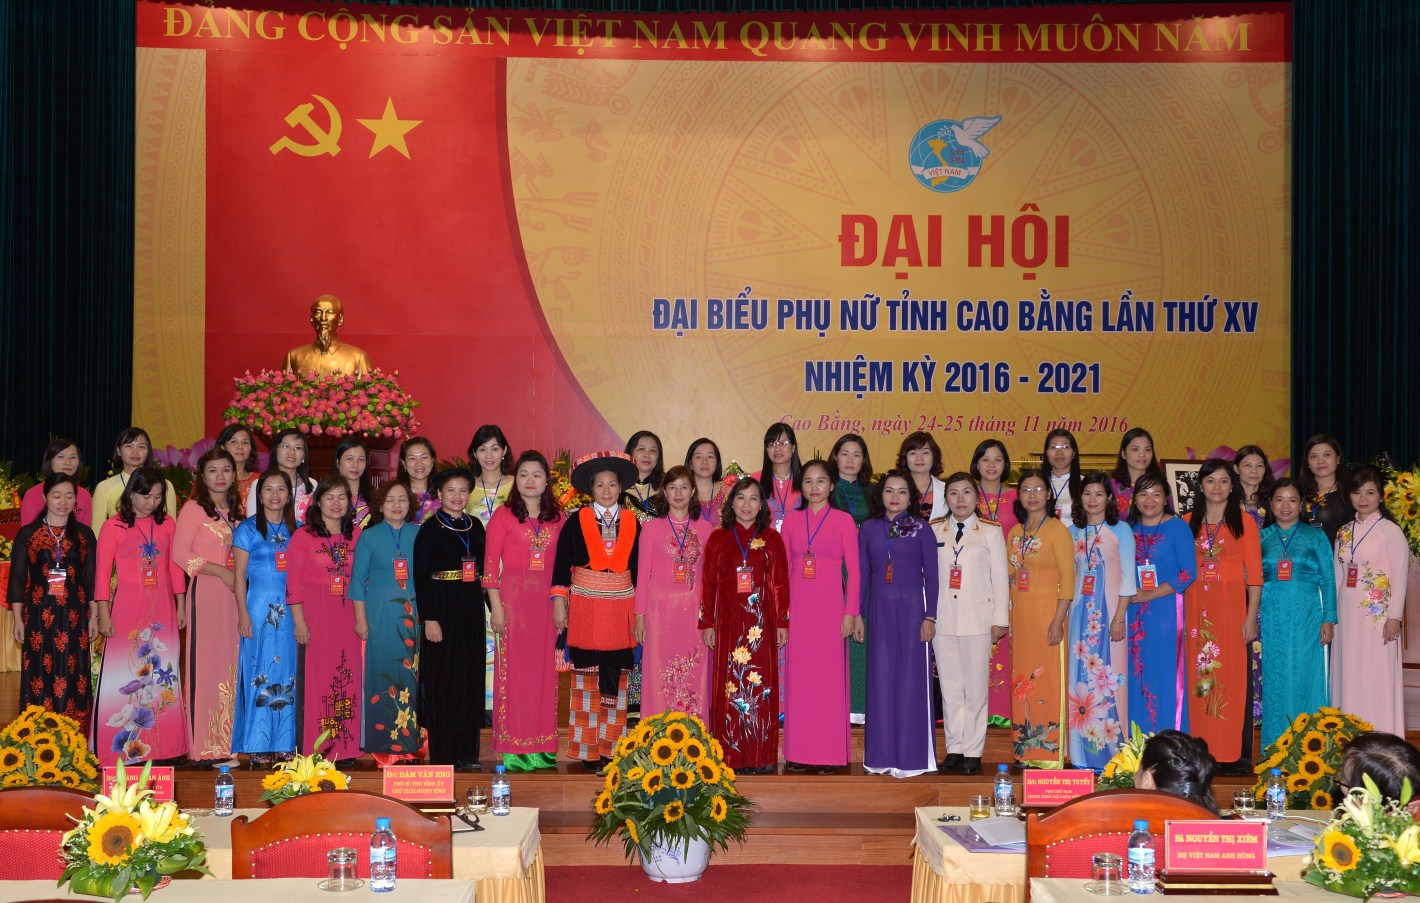 Đại hội Đại biểu Phụ nữ tỉnh Cao Bằng lần thứ XV, nhiệm kỳ 2016 - 2021